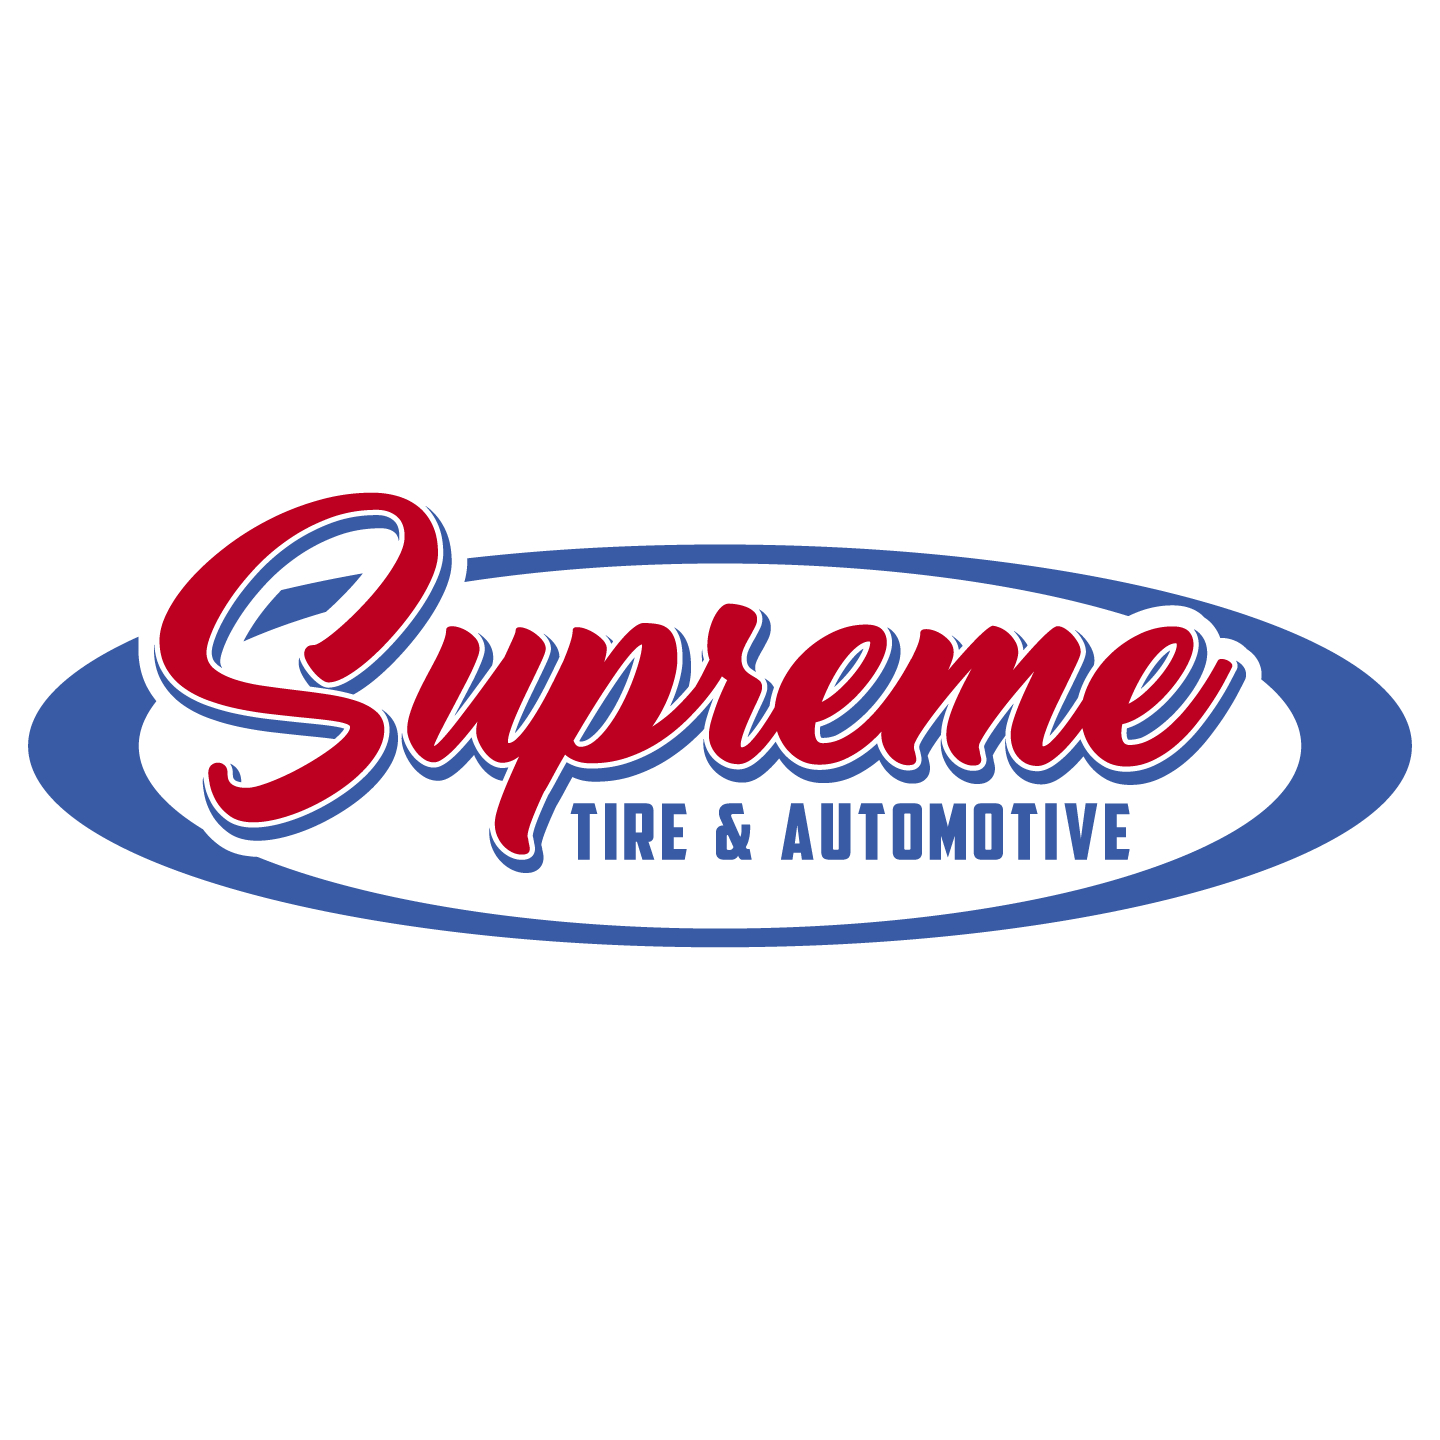 Supreme Automotive Logo - Saint John's Automotive Service Centre. Supreme Tire and Automotive